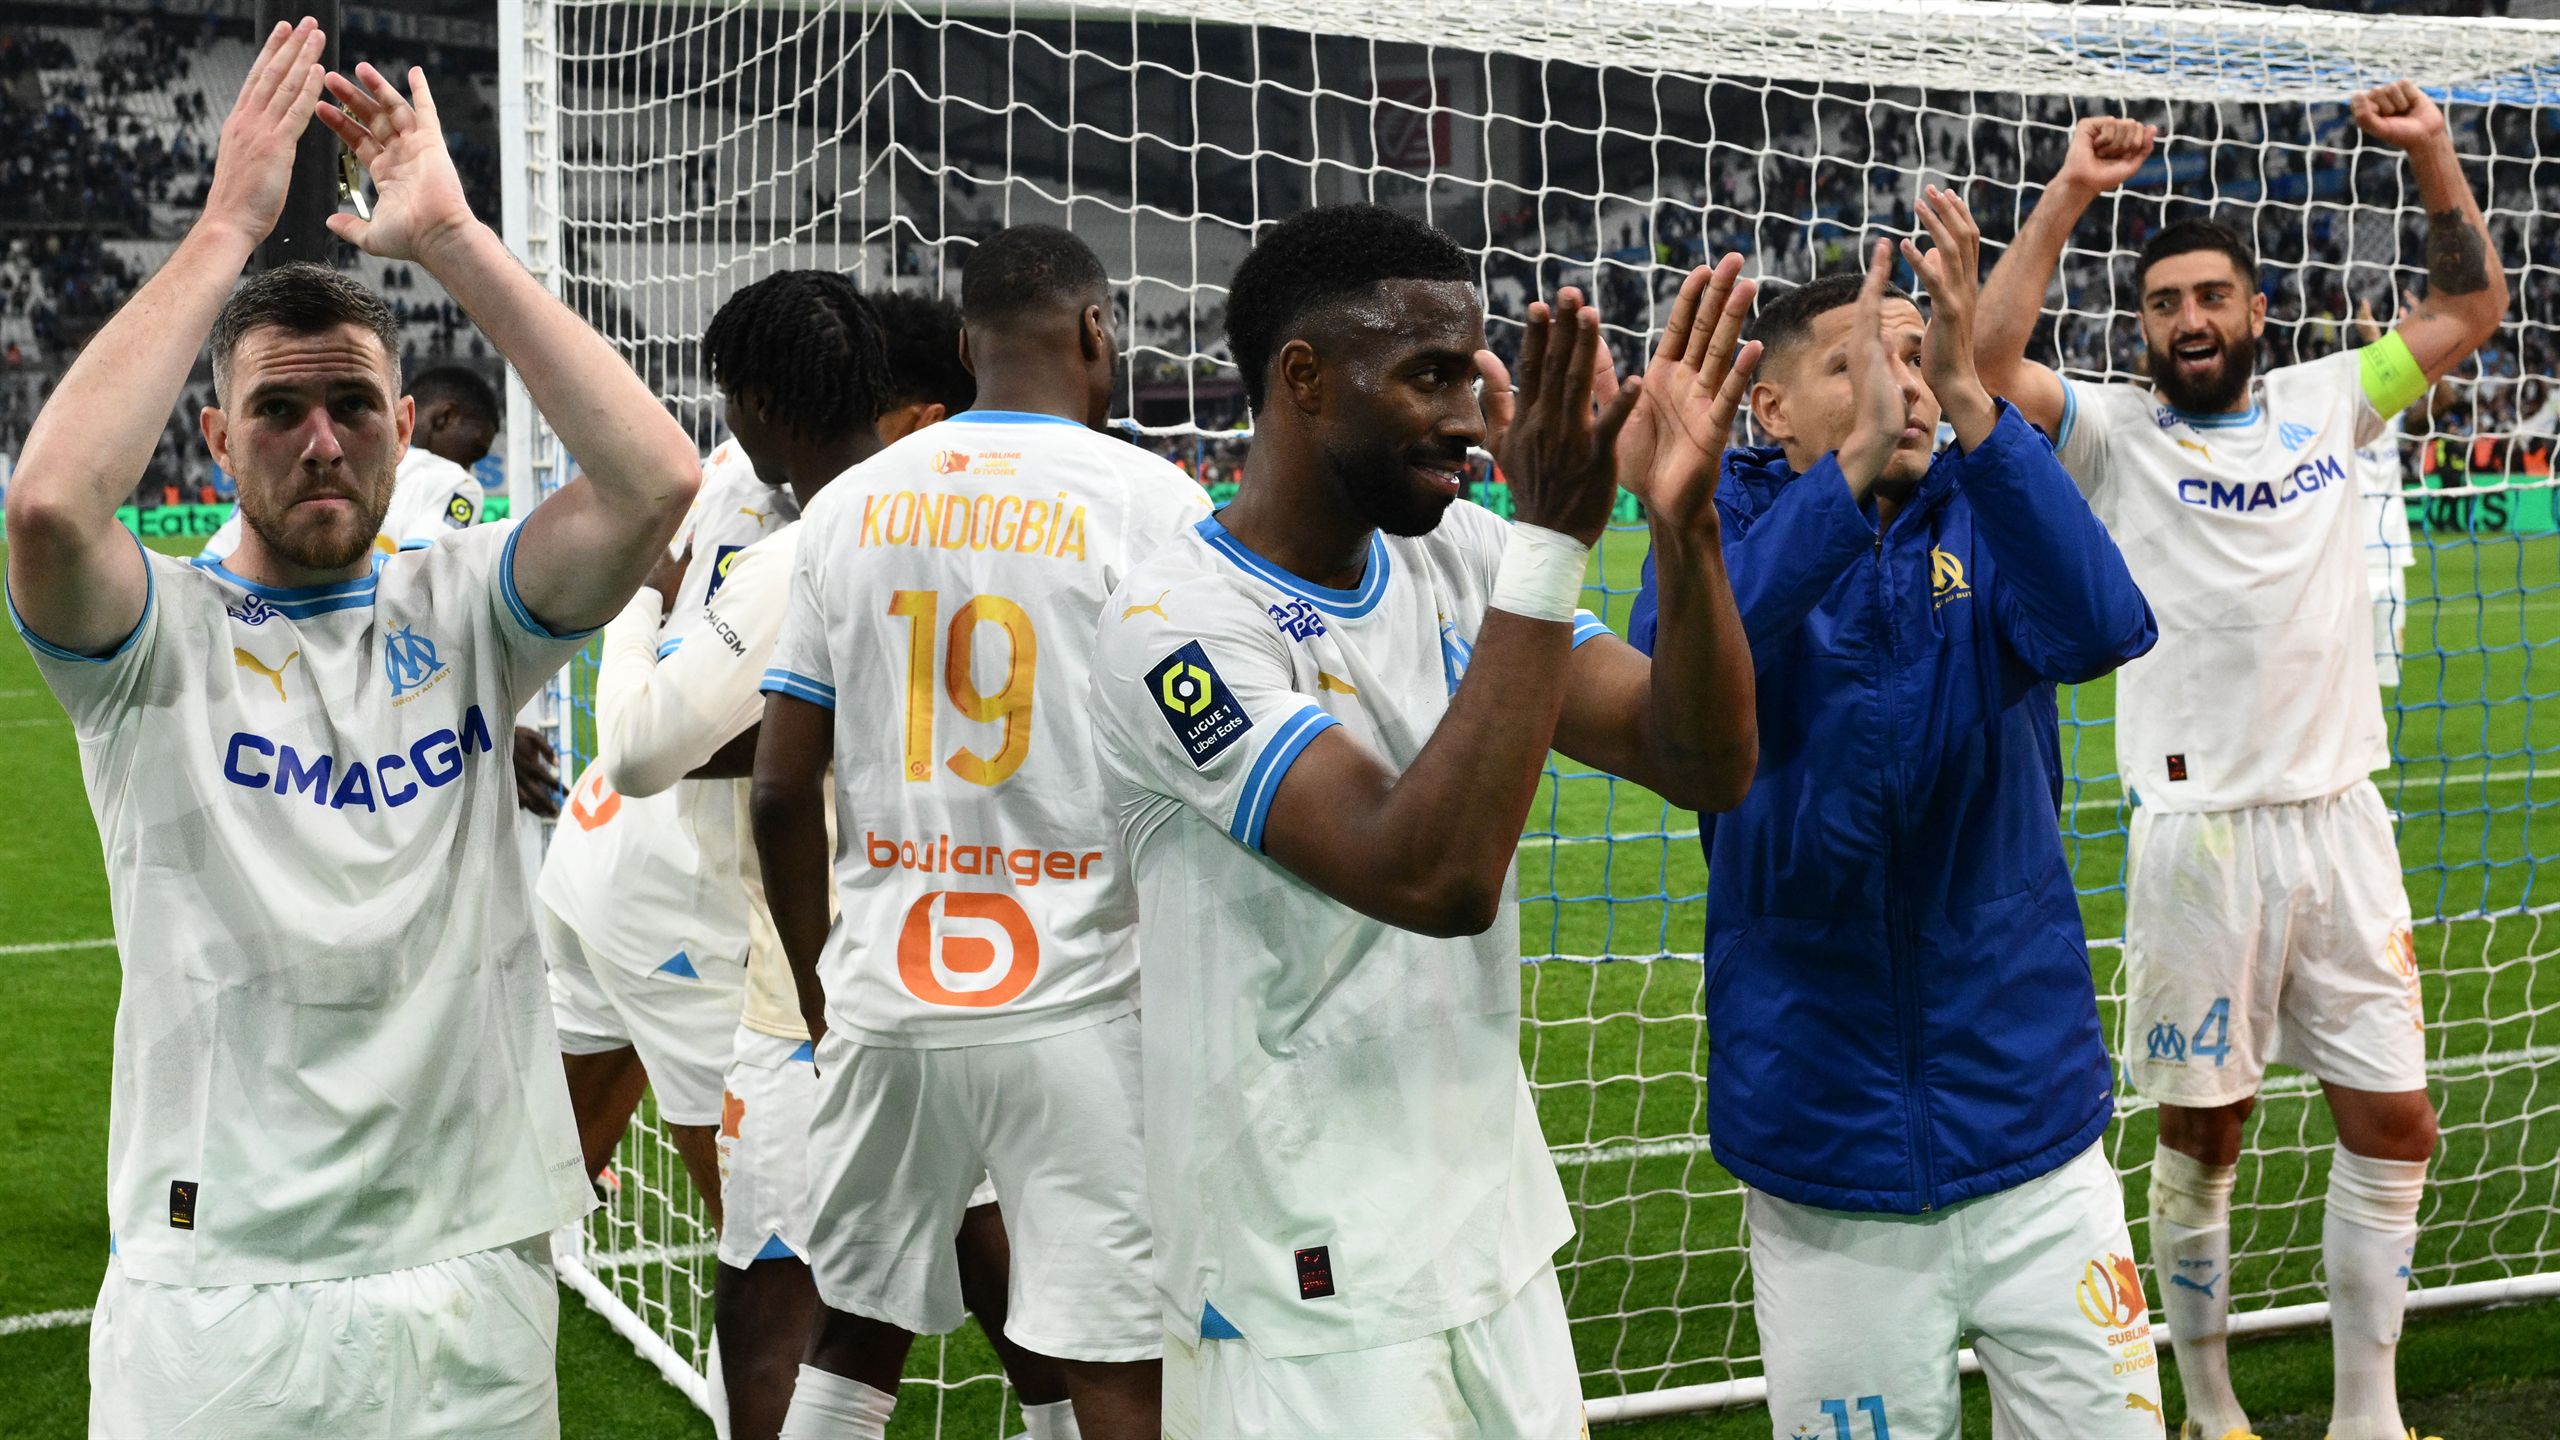 Ligue 1 | OM - Lens (2-1) : A Marseille, les cœurs suppléent les corps : "On donne tout" thumbnail